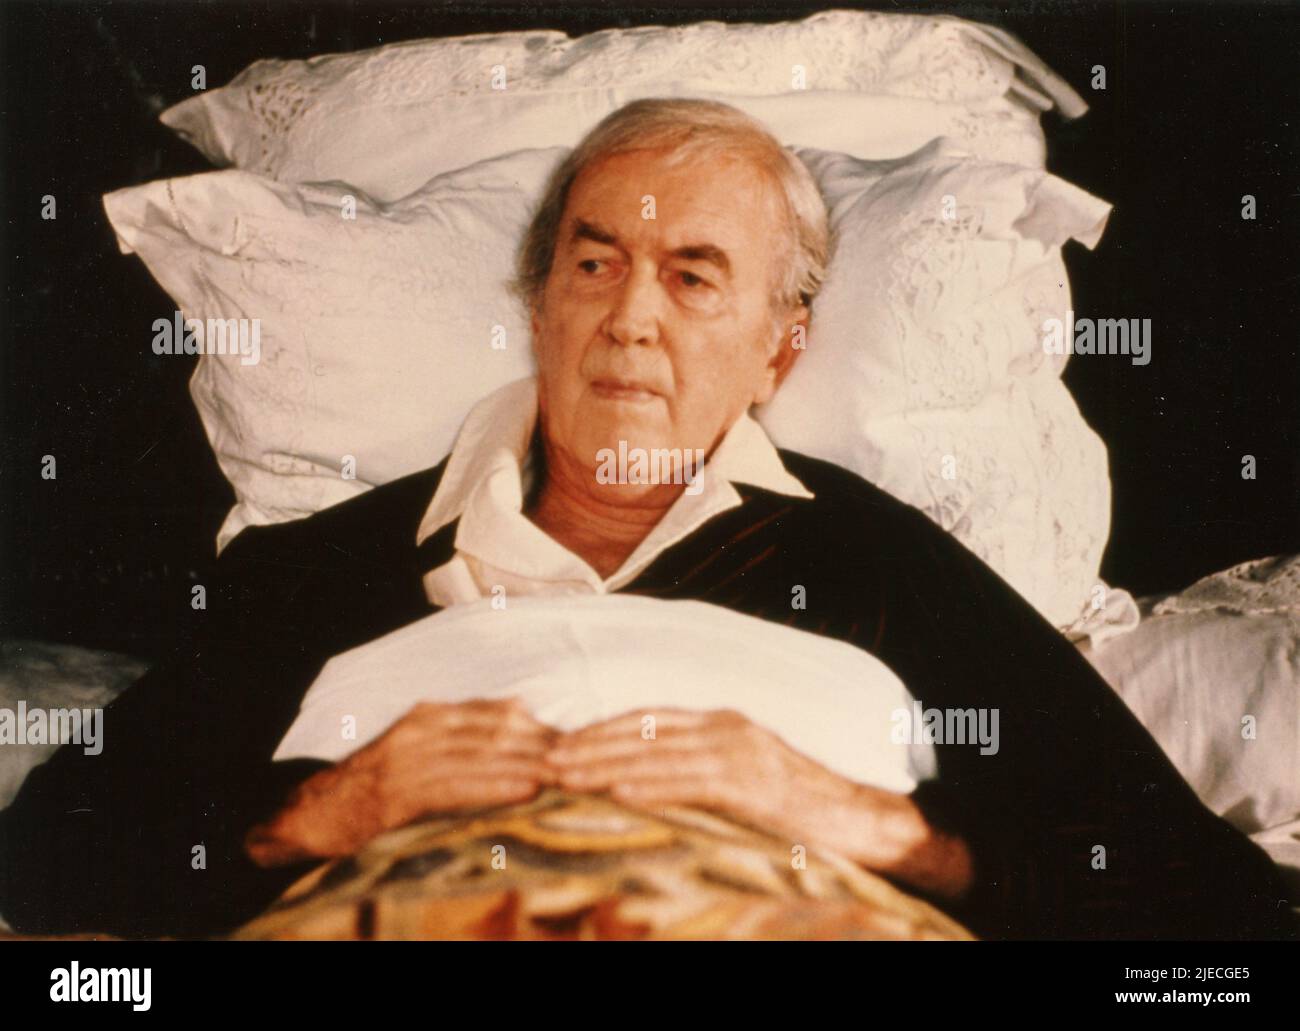 El actor estadounidense James Stewart en la película The Big Sleep, Reino Unido 1978 Foto de stock